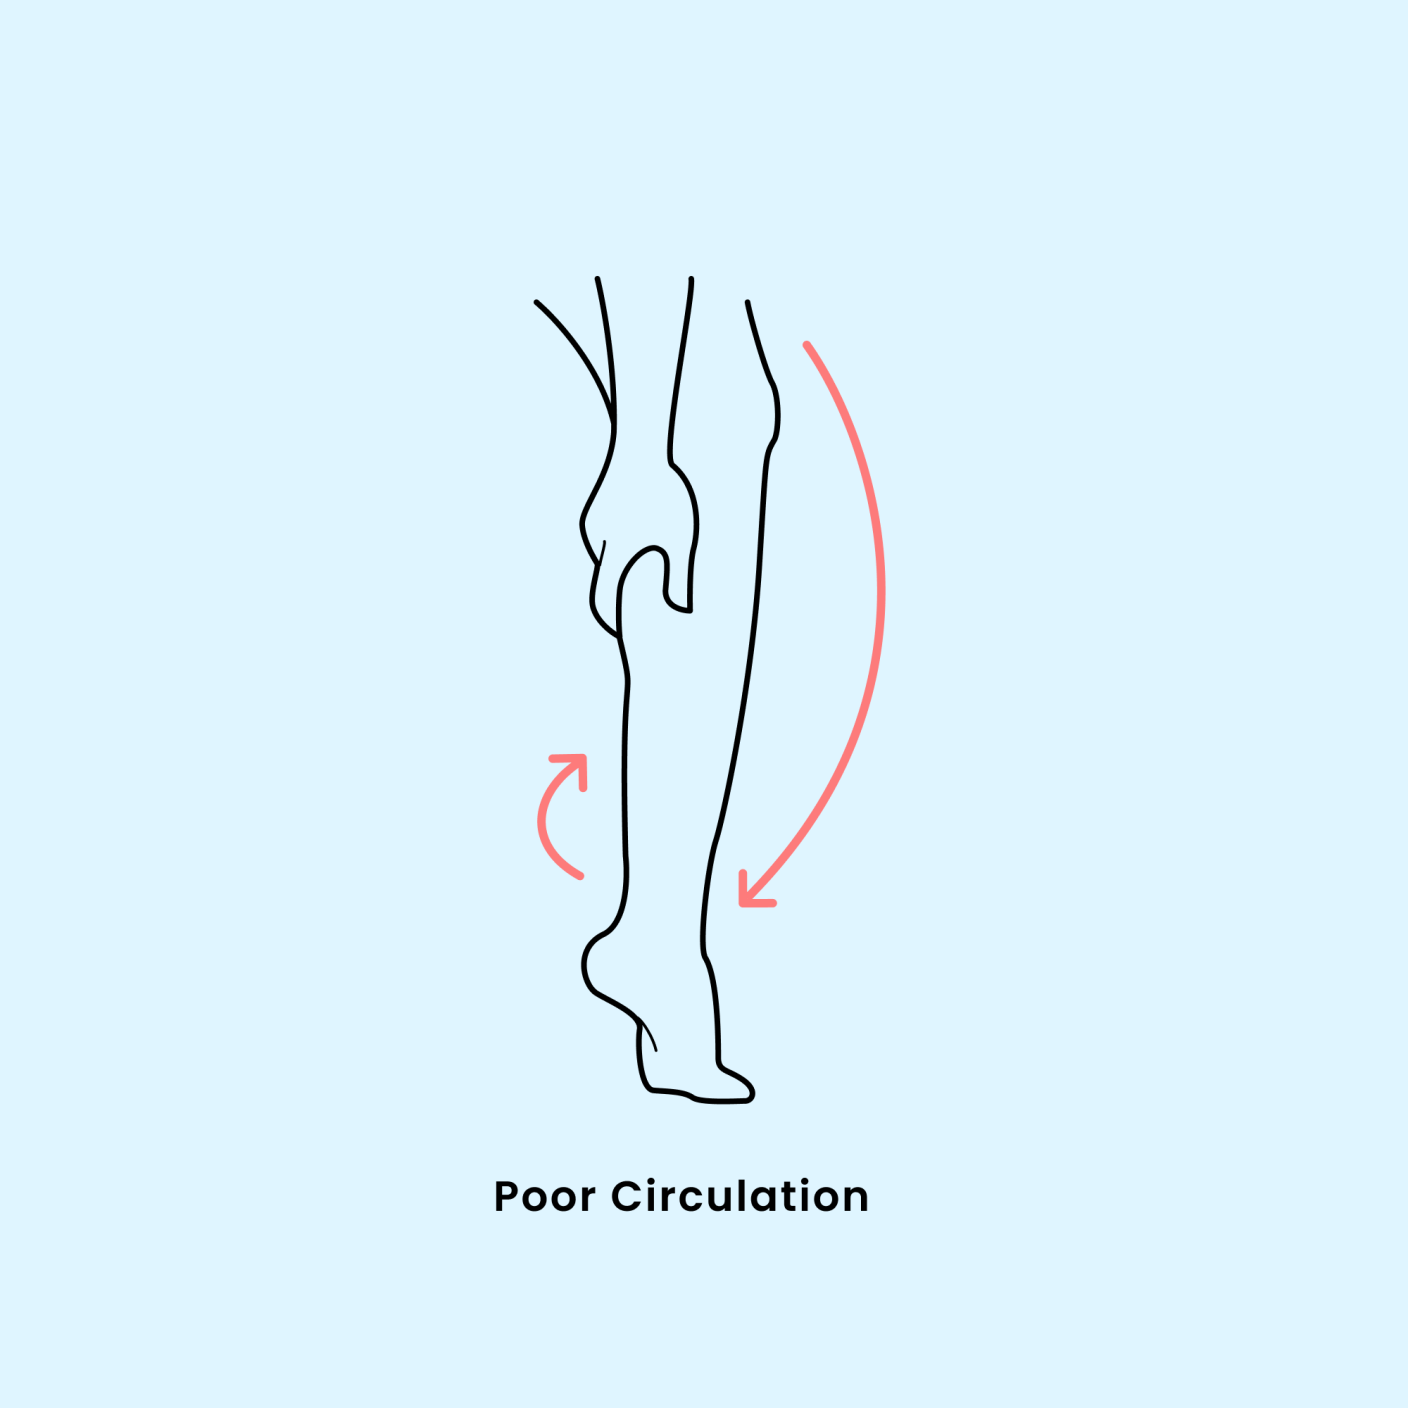 Mejora la mala circulación de piernas y pies: Síntomas, causas y soluciones